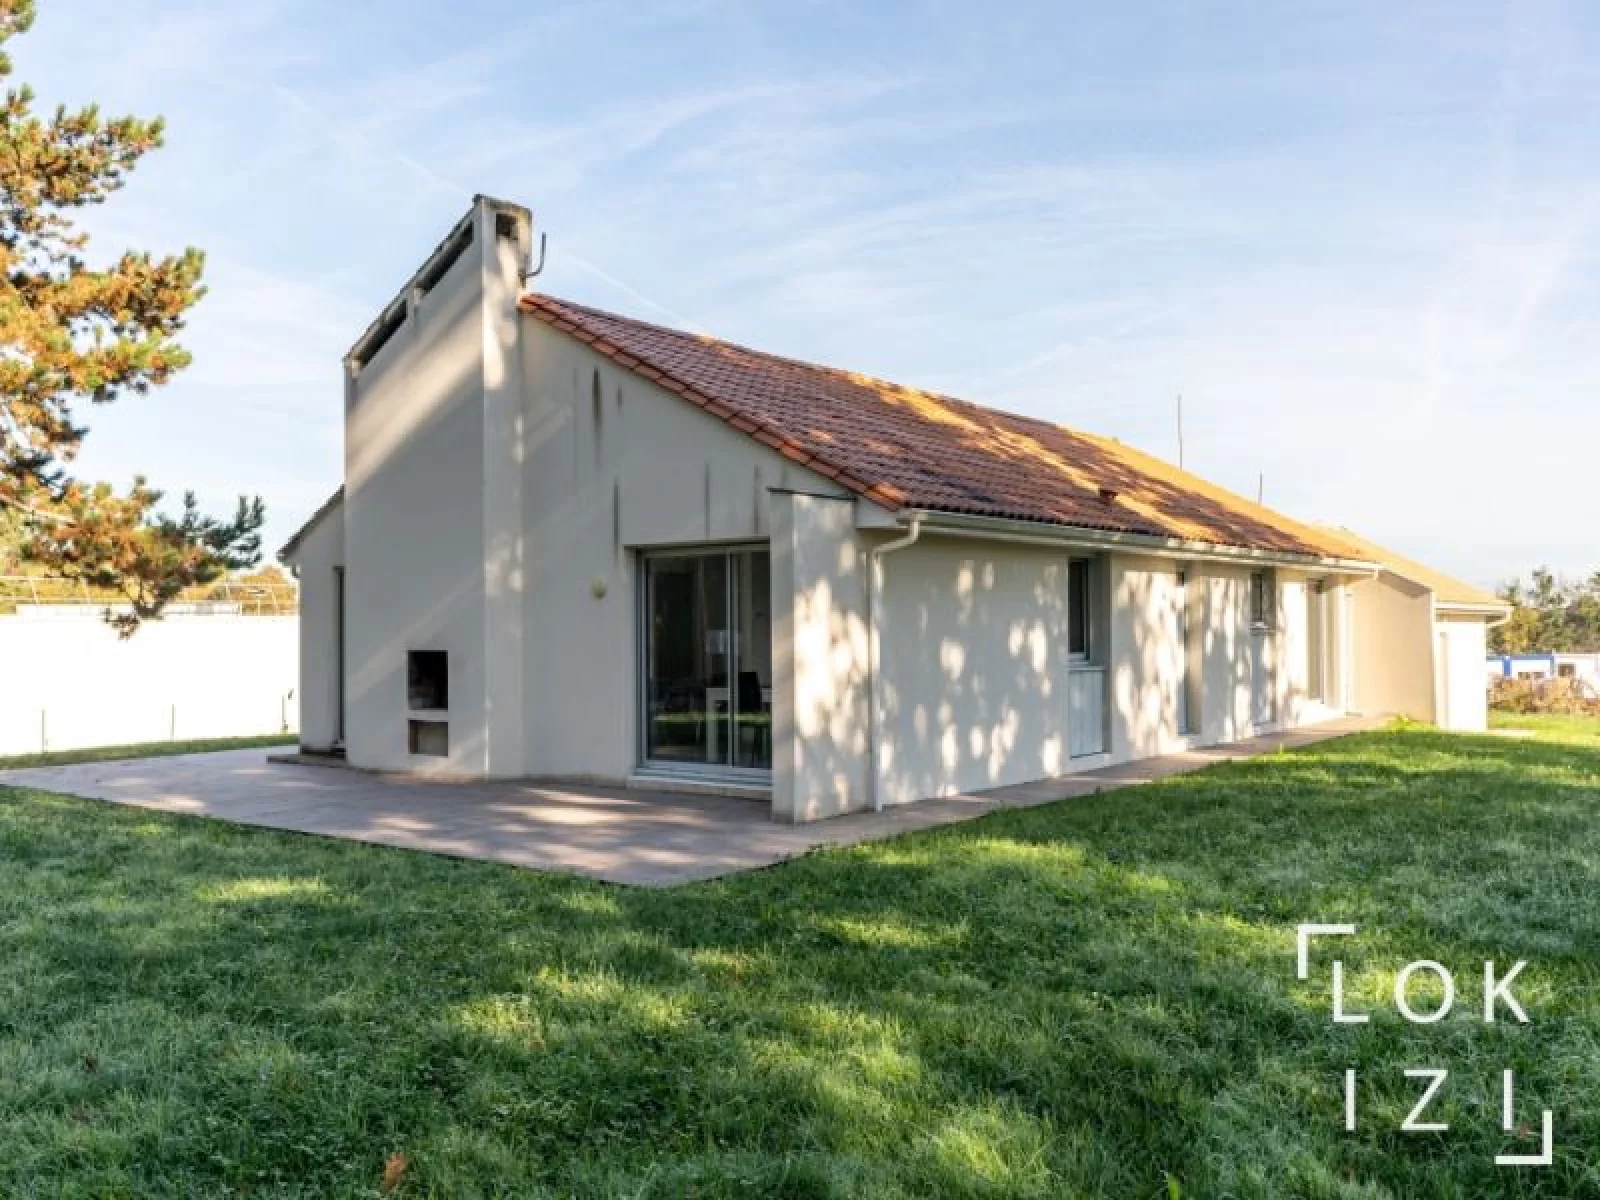 Location maison 131m avec jardin et garage (Bordeaux - Montussan)